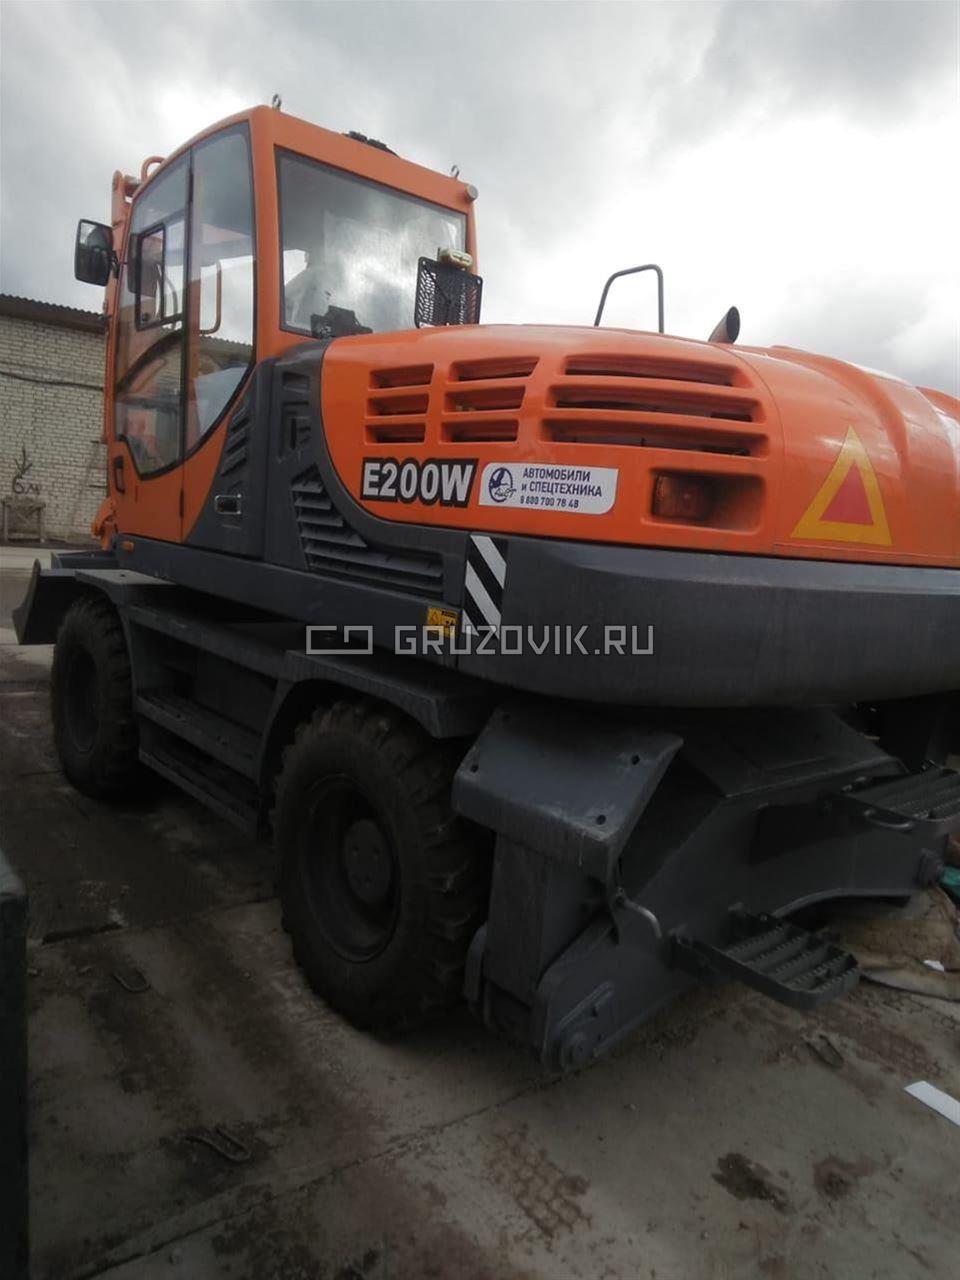 Новый Экскаватор  Эксмаш E200W в продаже на Gruzovik.ru, 14 500 000 ₽